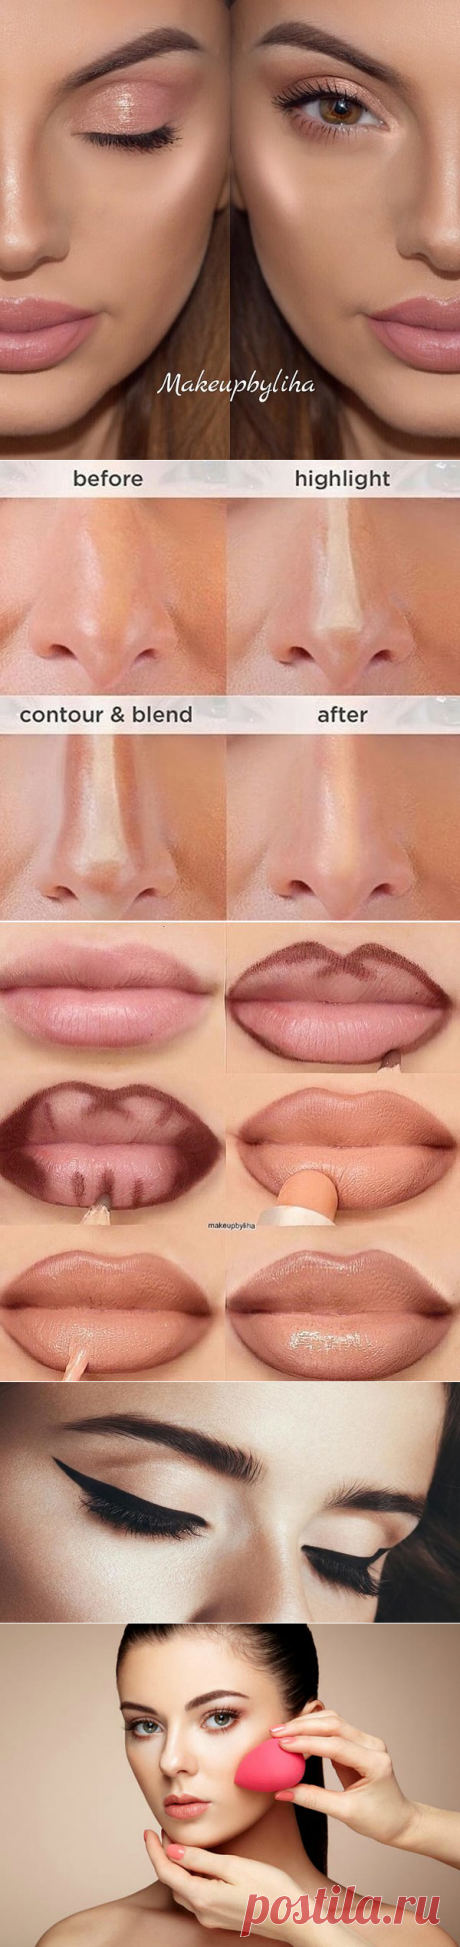 Необычные трюки для макияжа, которые помогут выглядеть свежо и красиво | ЛЕДИ Лайк | Яндекс Дзен